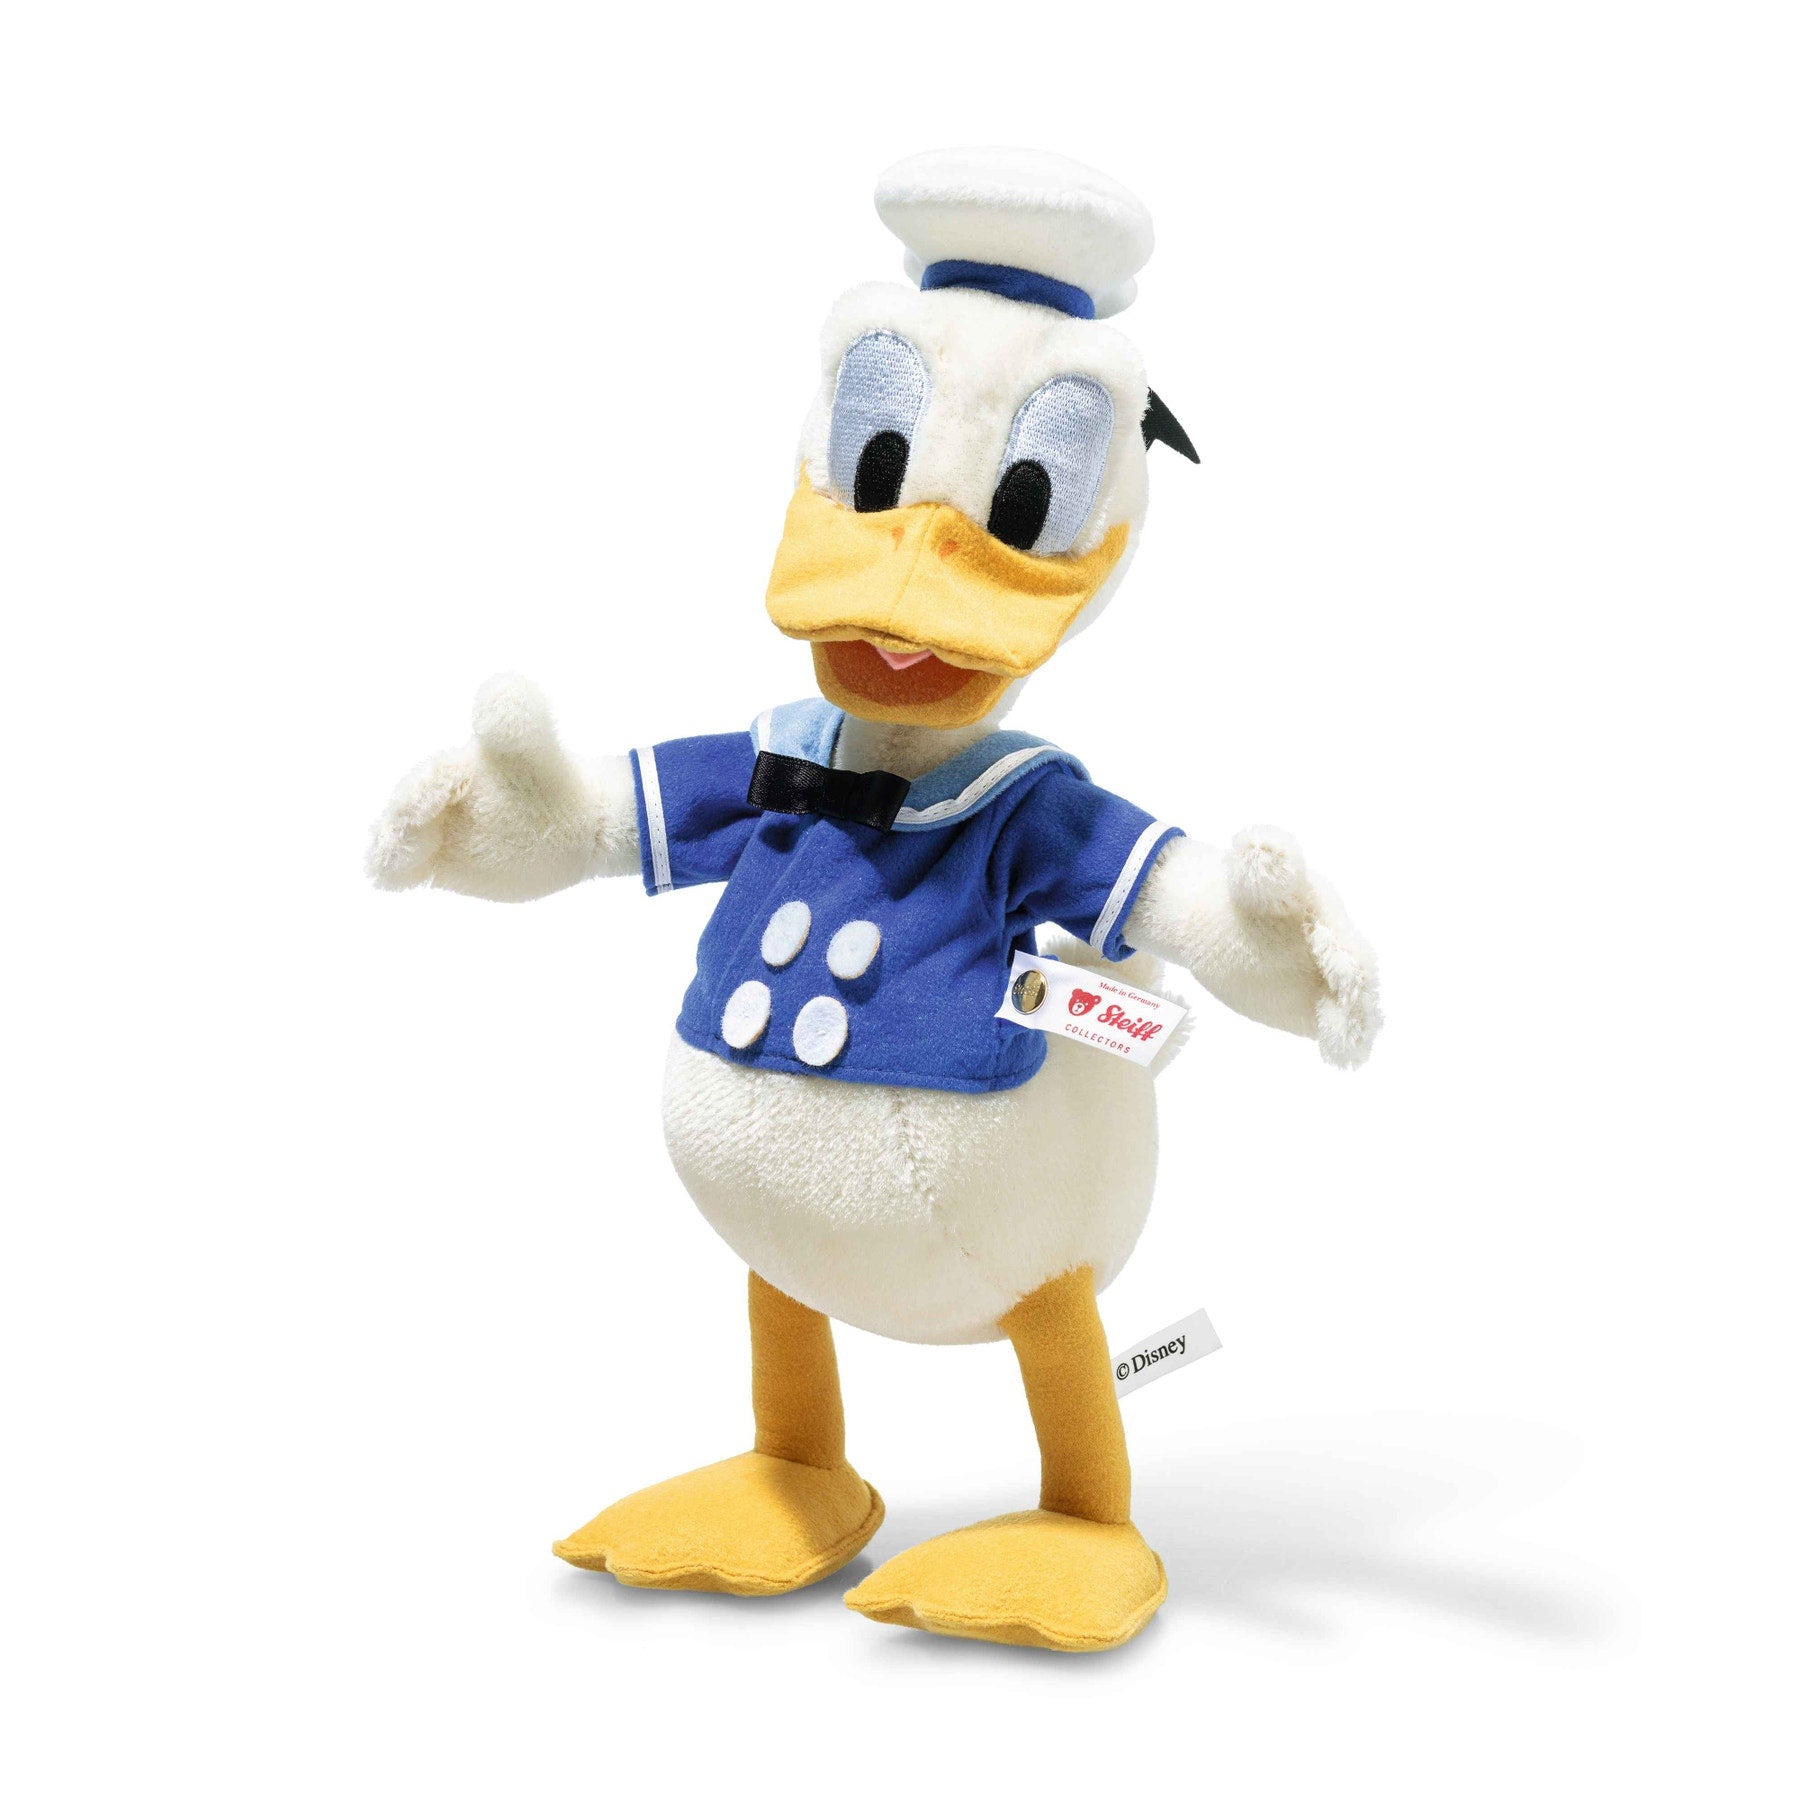 Steiff Donald Duck 90th Anniversary